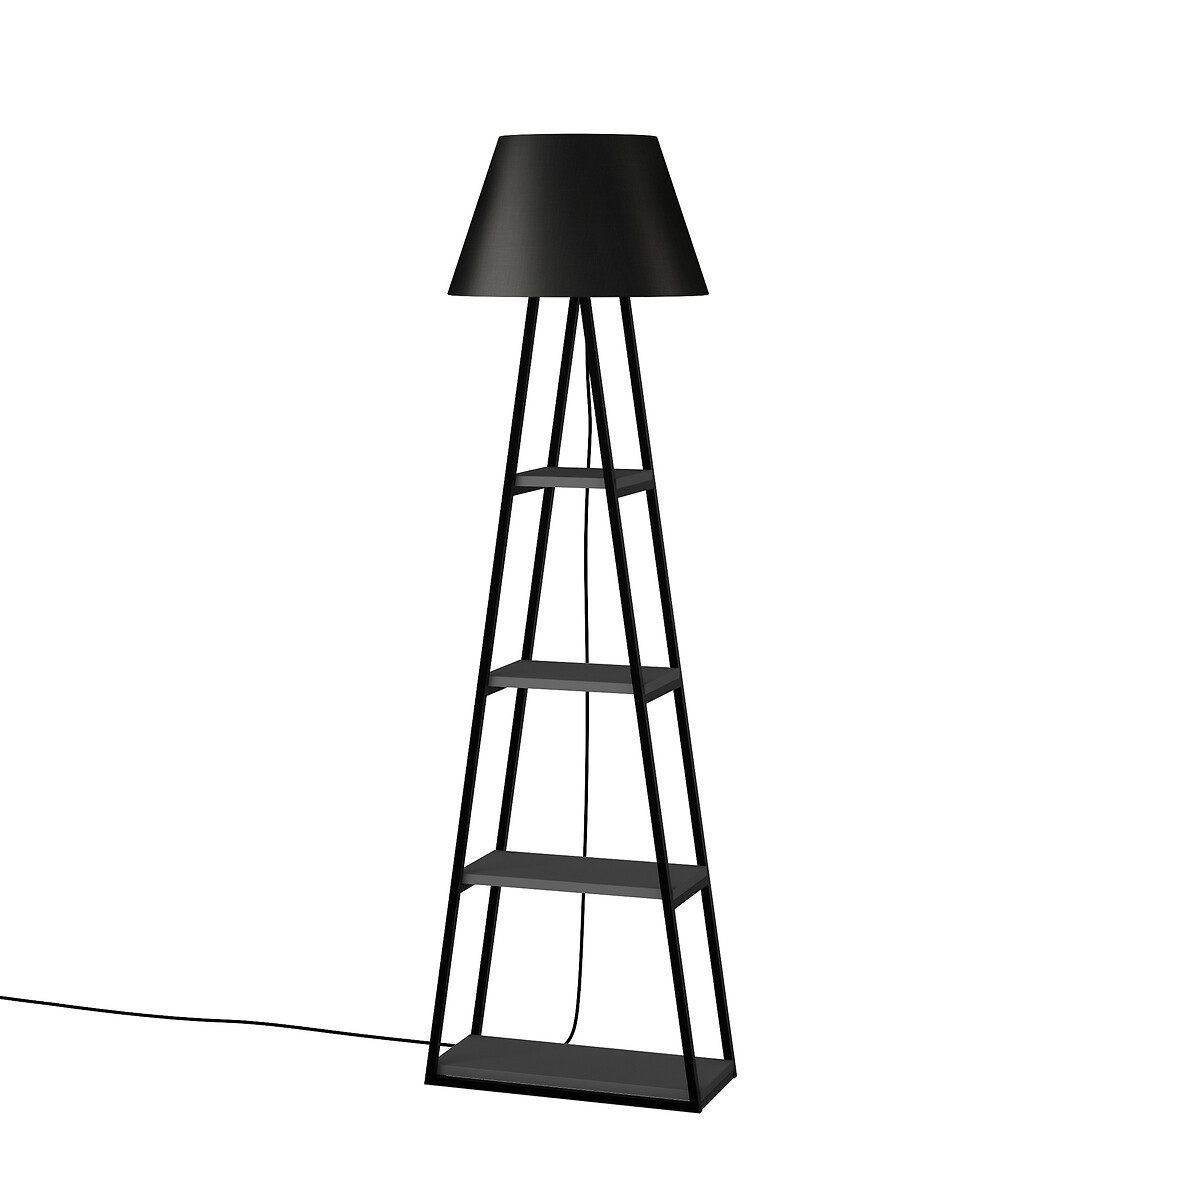 Торшер PAL FLOOR LAMP ANTHRACITE единый размер серый LaRedoute - фото 1